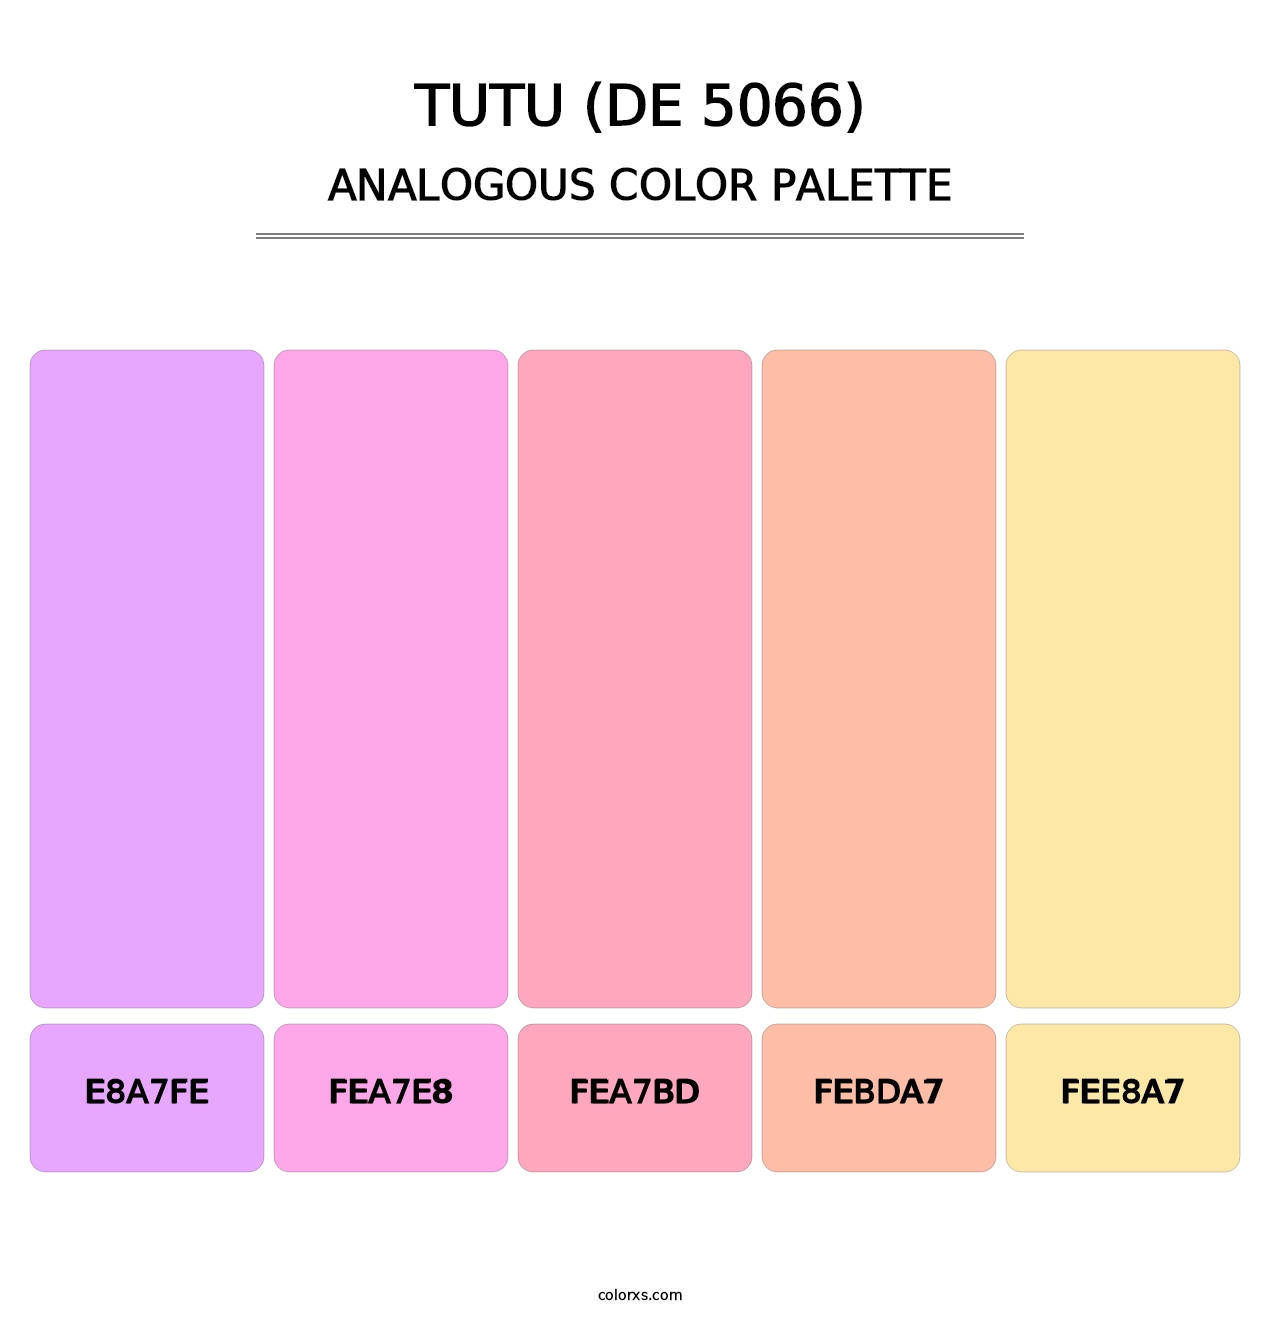 Tutu (DE 5066) - Analogous Color Palette